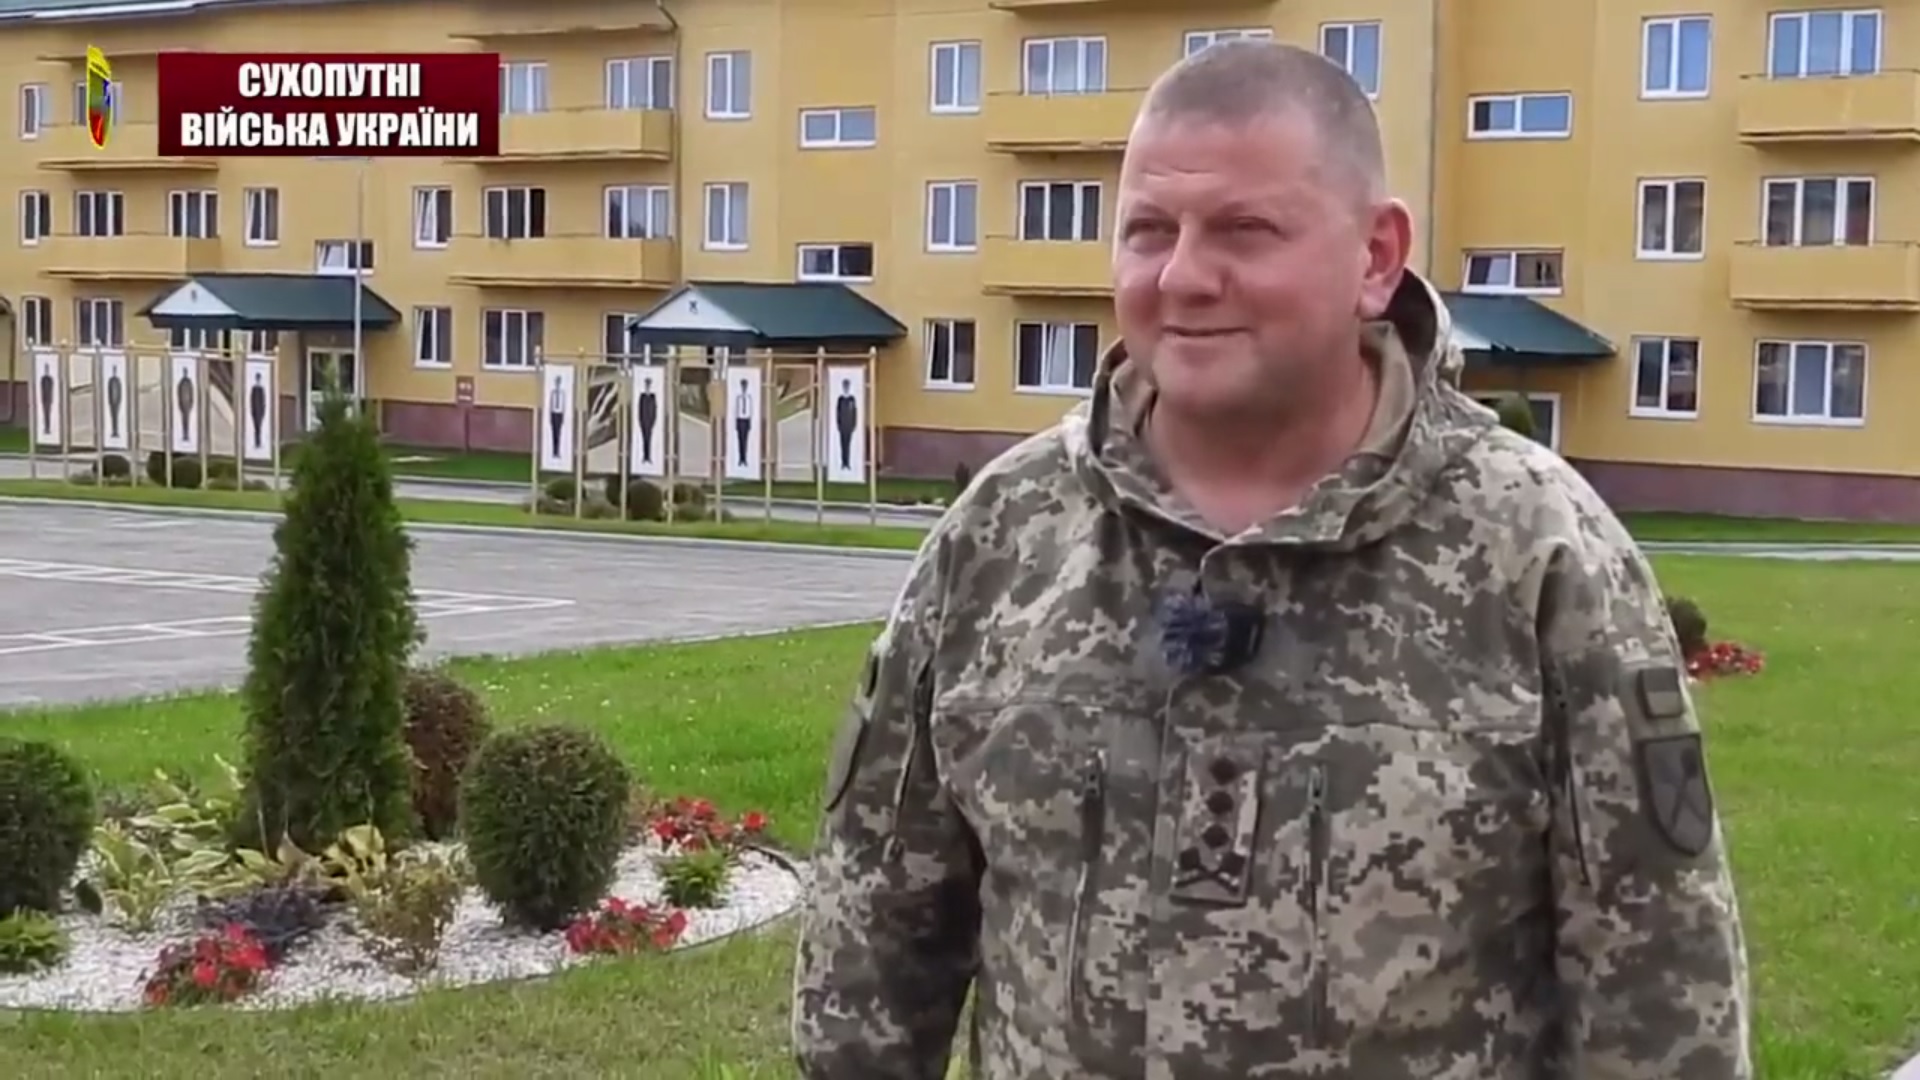 Залужный опубликовал видеообращение к российским войскам на русском языке, но затем удалил его